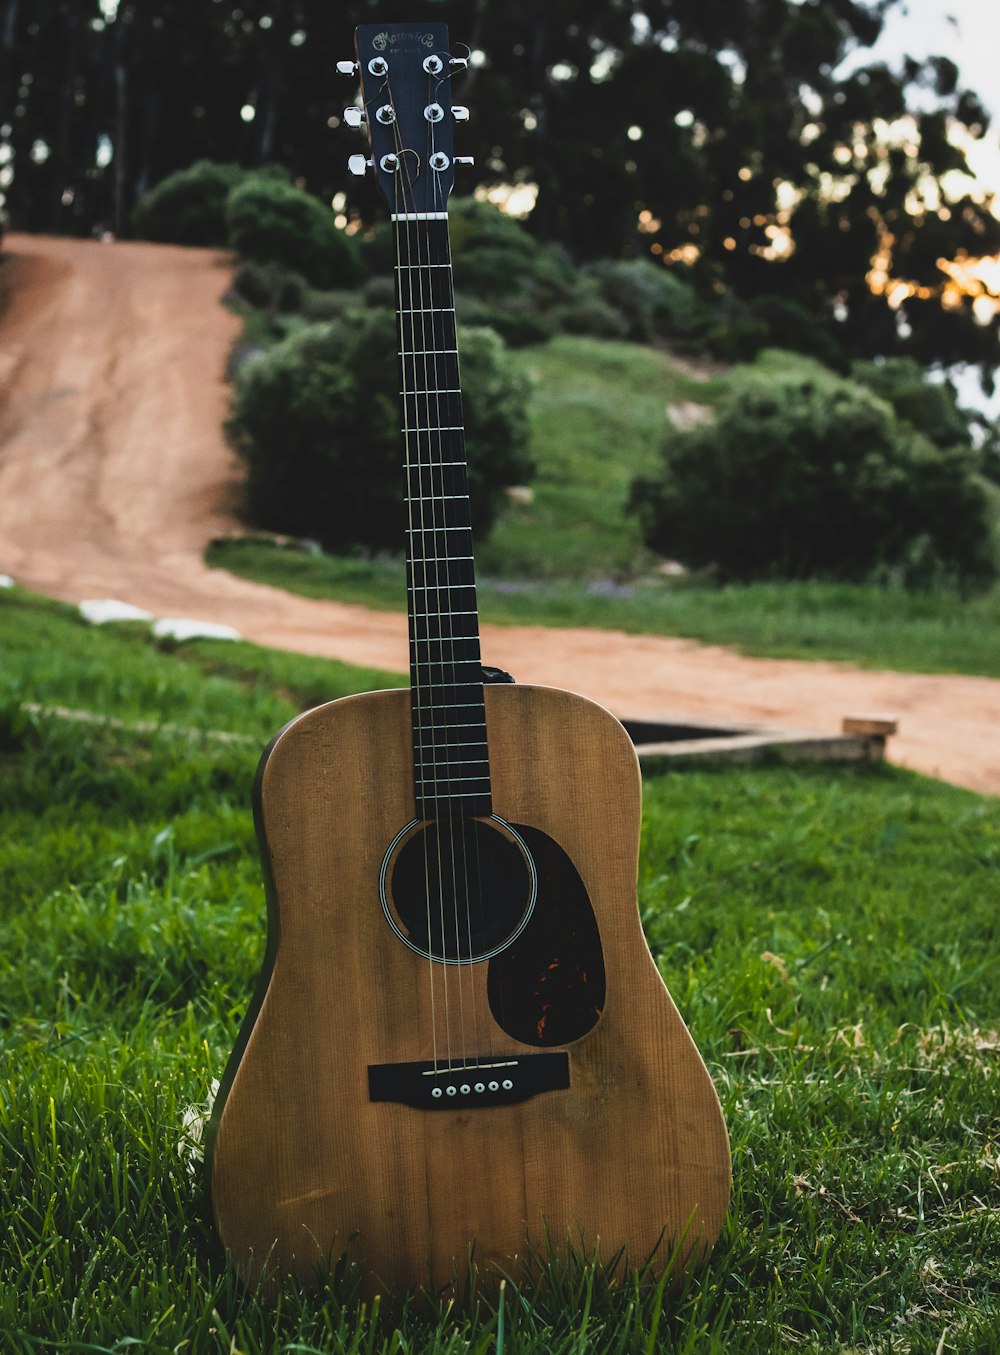 Eine Gitarre sitzt im Gras in einem Park